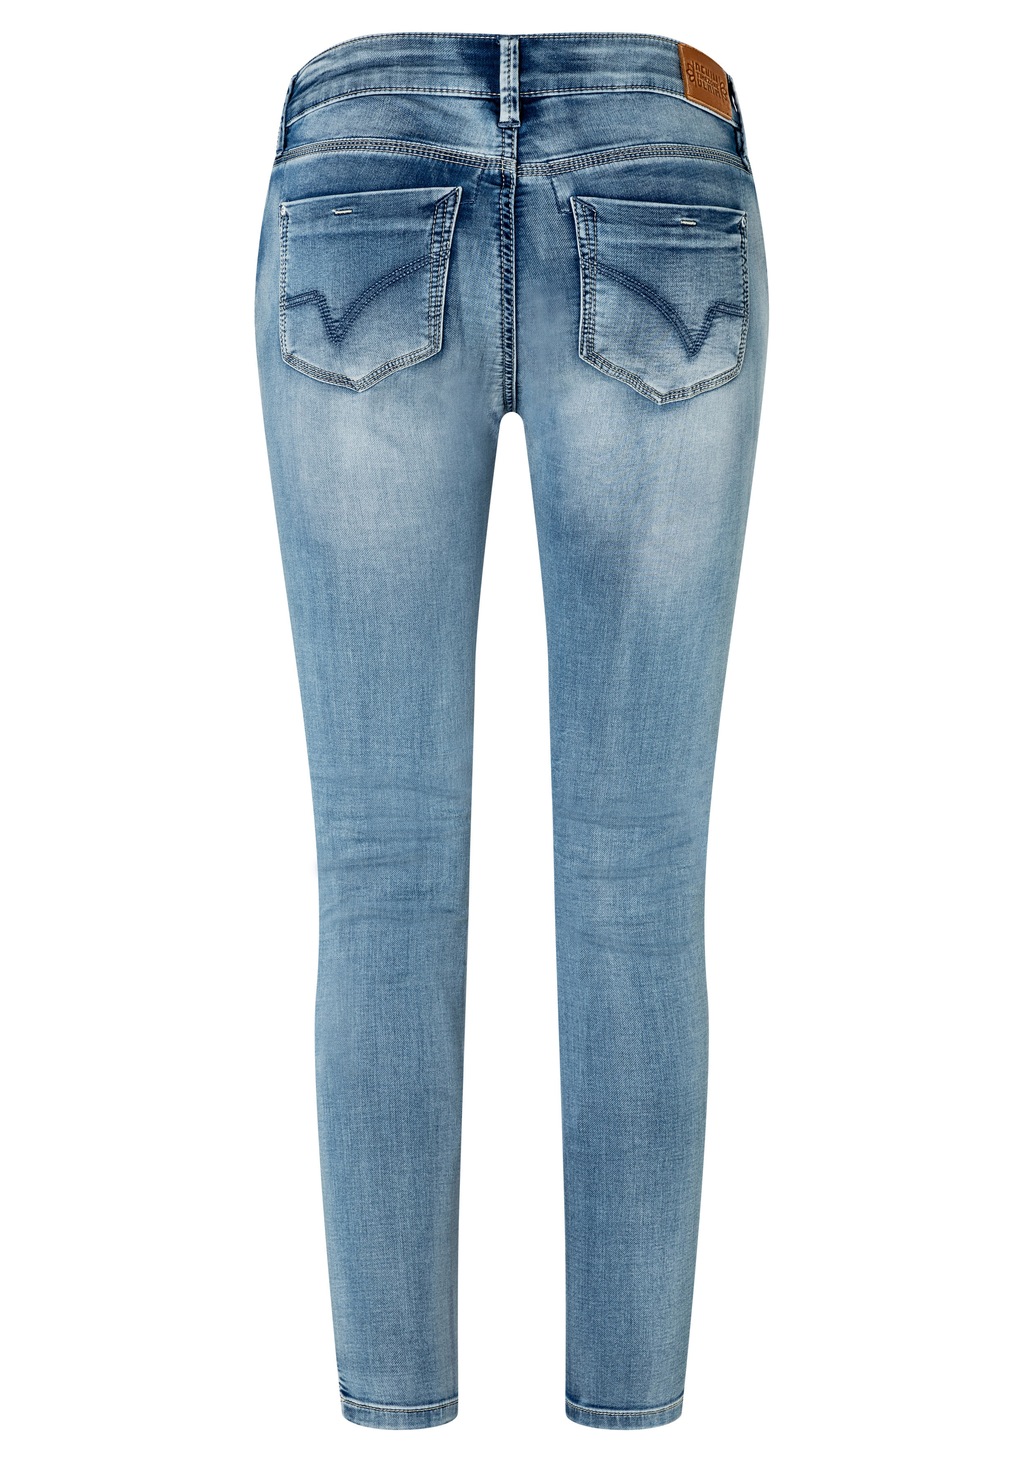 TIMEZONE Damen Jeans Tight AleenaTZ 7/8 - Blau - Aqua Blue Wash günstig online kaufen